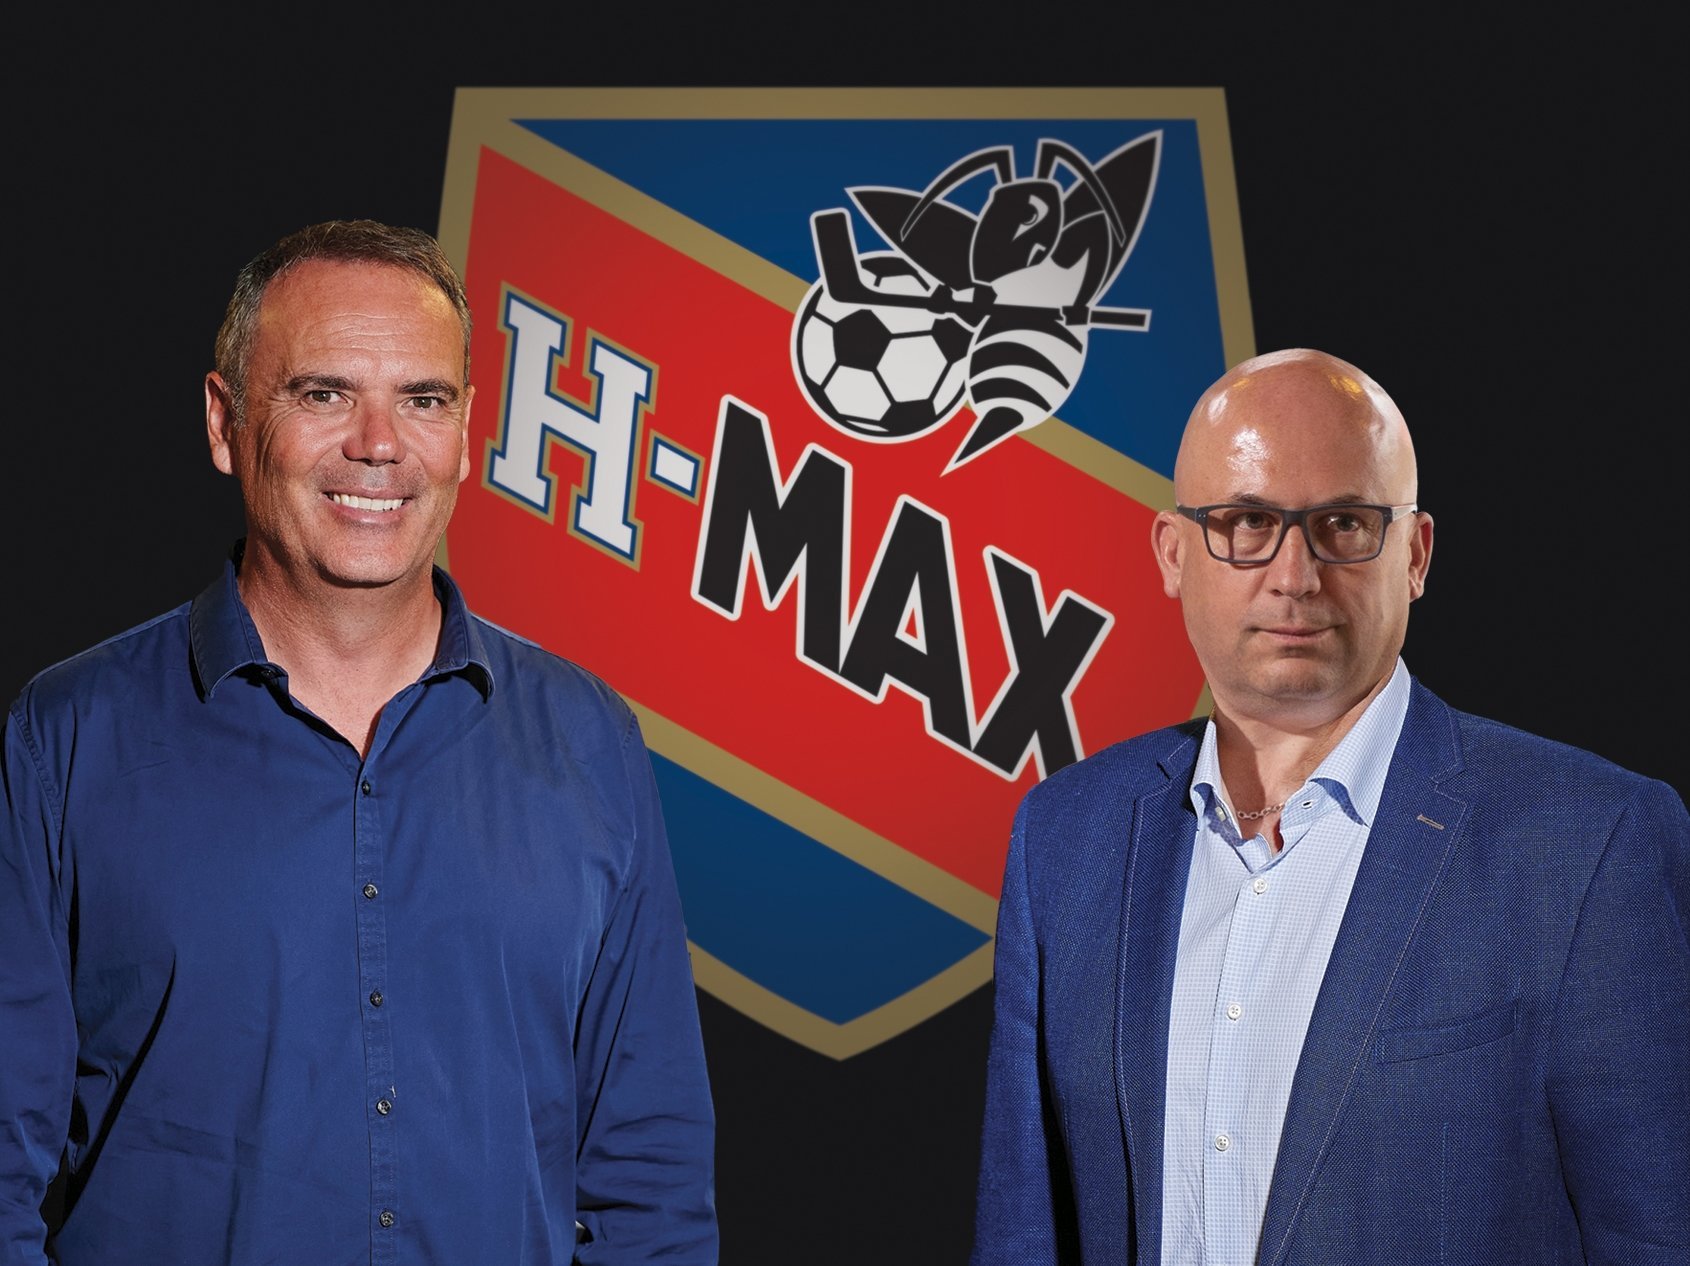 Jeff Collet, président de Xamax (à gauche) et Olivier Calame, président du HC La Chaux-de-Fonds, avec au centre le projet de nom et de logo.